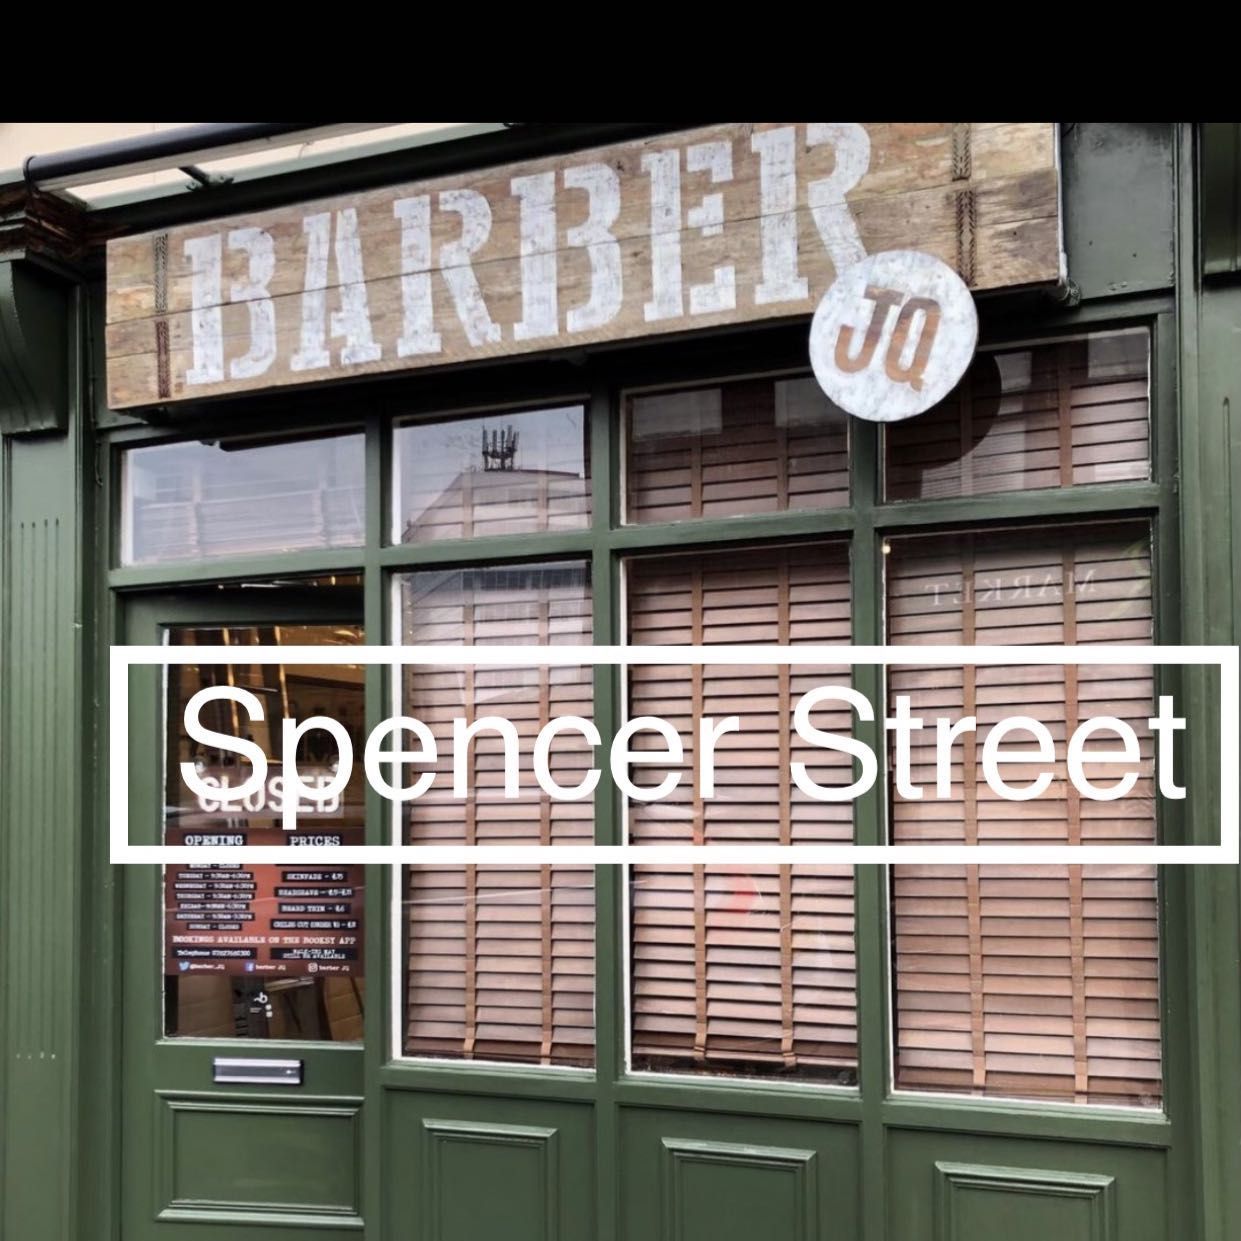 Barber JQ, 3a Spencer Street, Jewellery quarter, B18 6DD, Birmingham